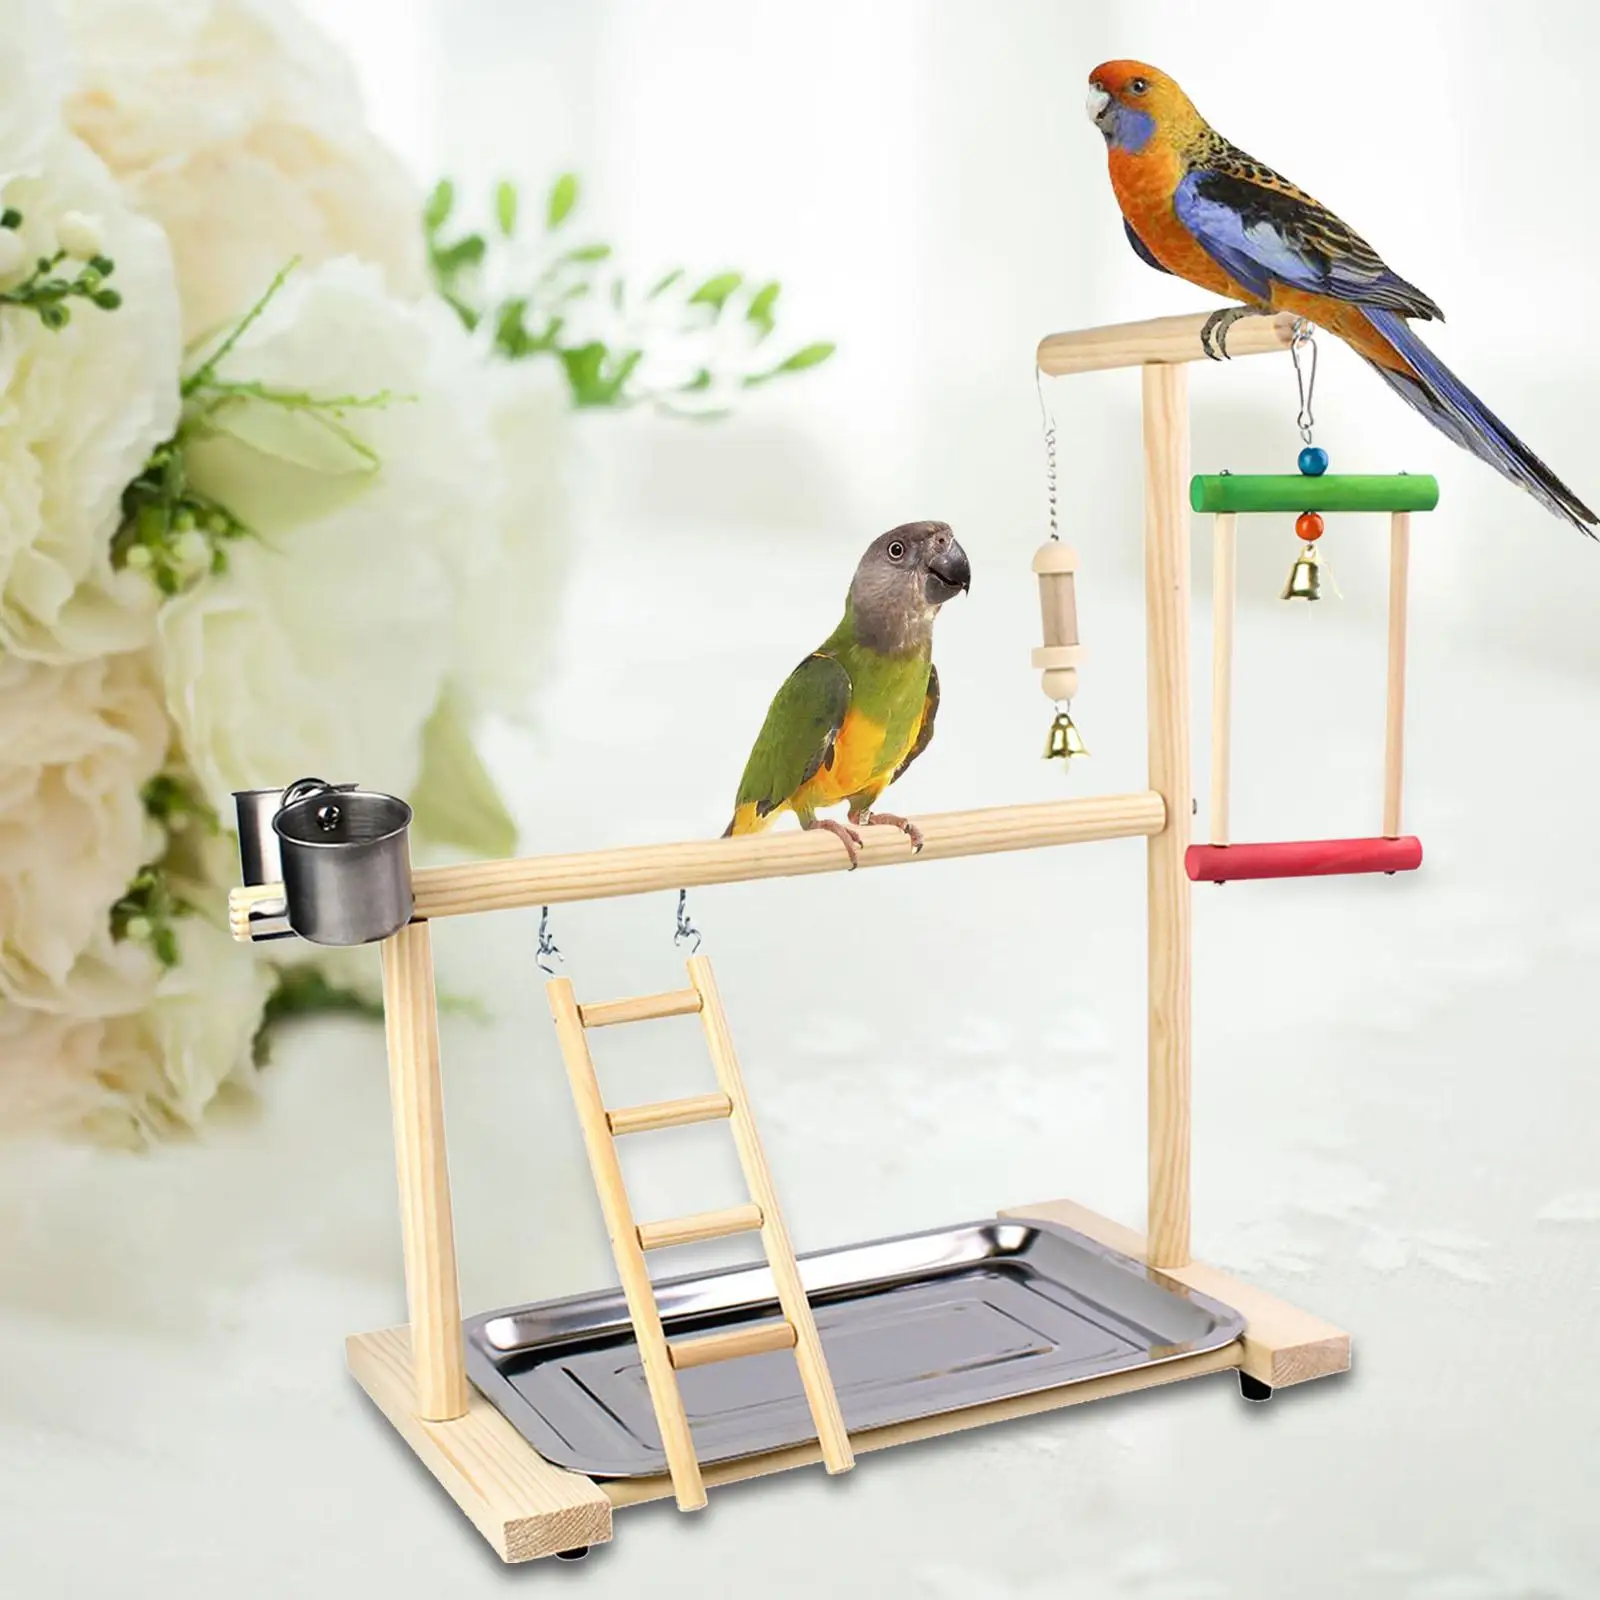 Toys Bird Perch Stand Platform Bird Playground with Feeder Cups Bells Perch Gym Bird Gym Exercise